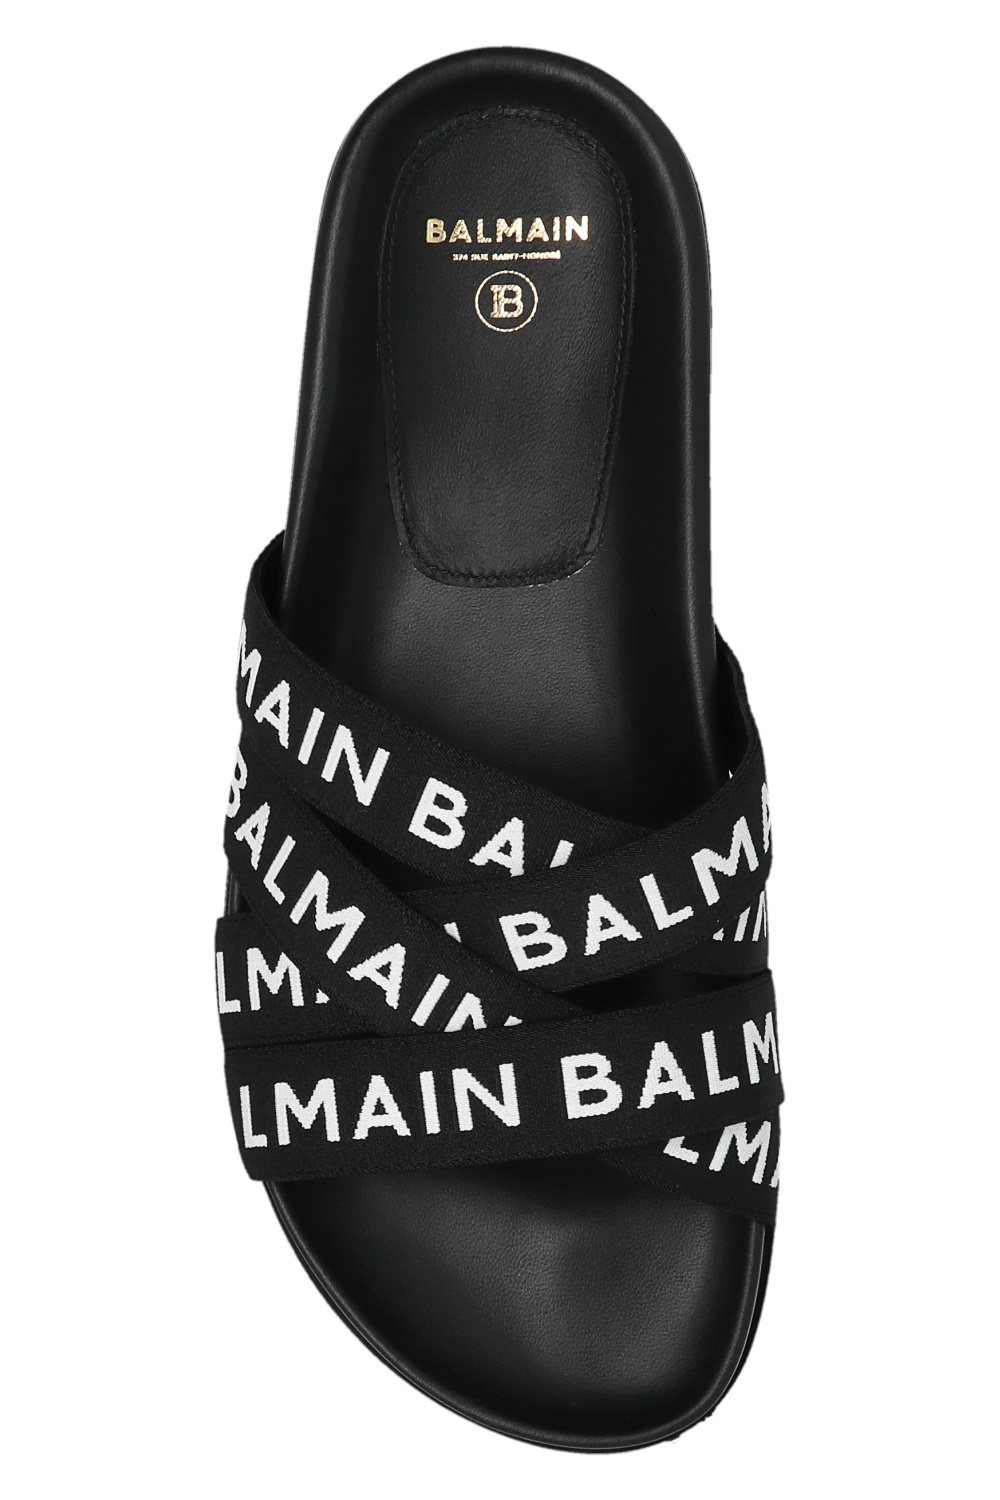 Balmain MEN balmain logo-print semi-sheer briefs